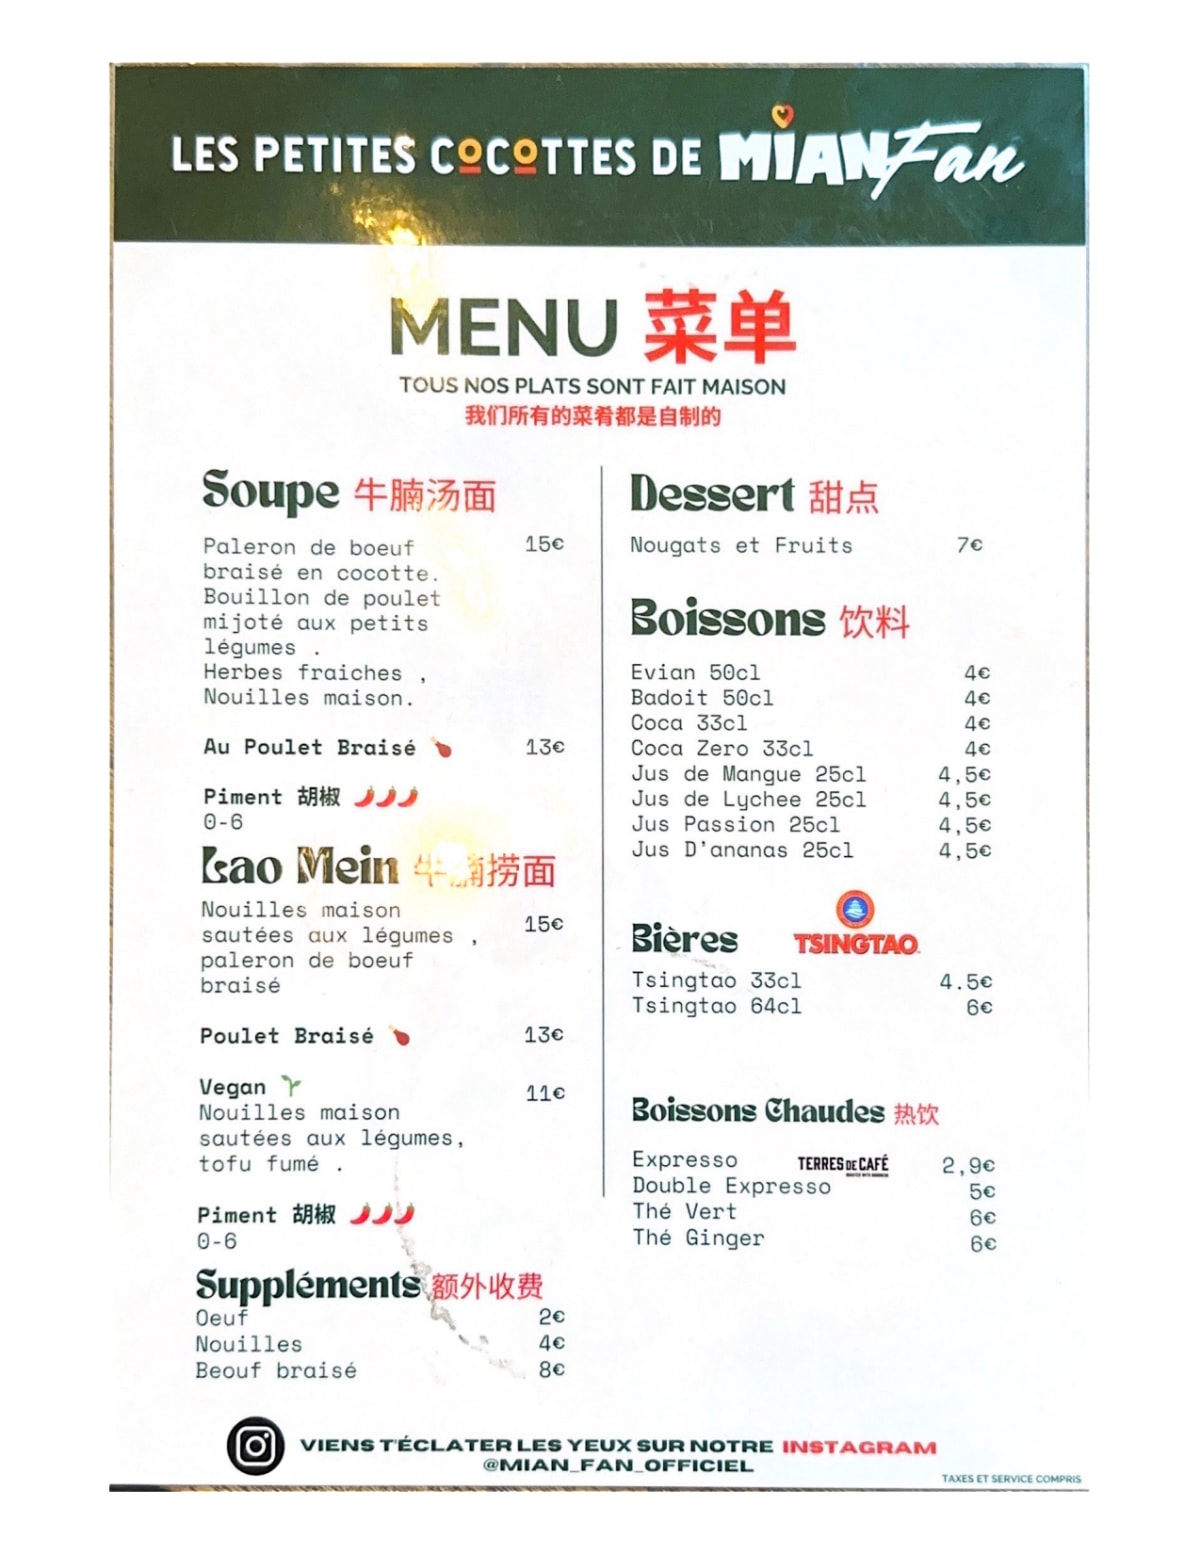 Les Petites Cocottes de Mian Fan menu